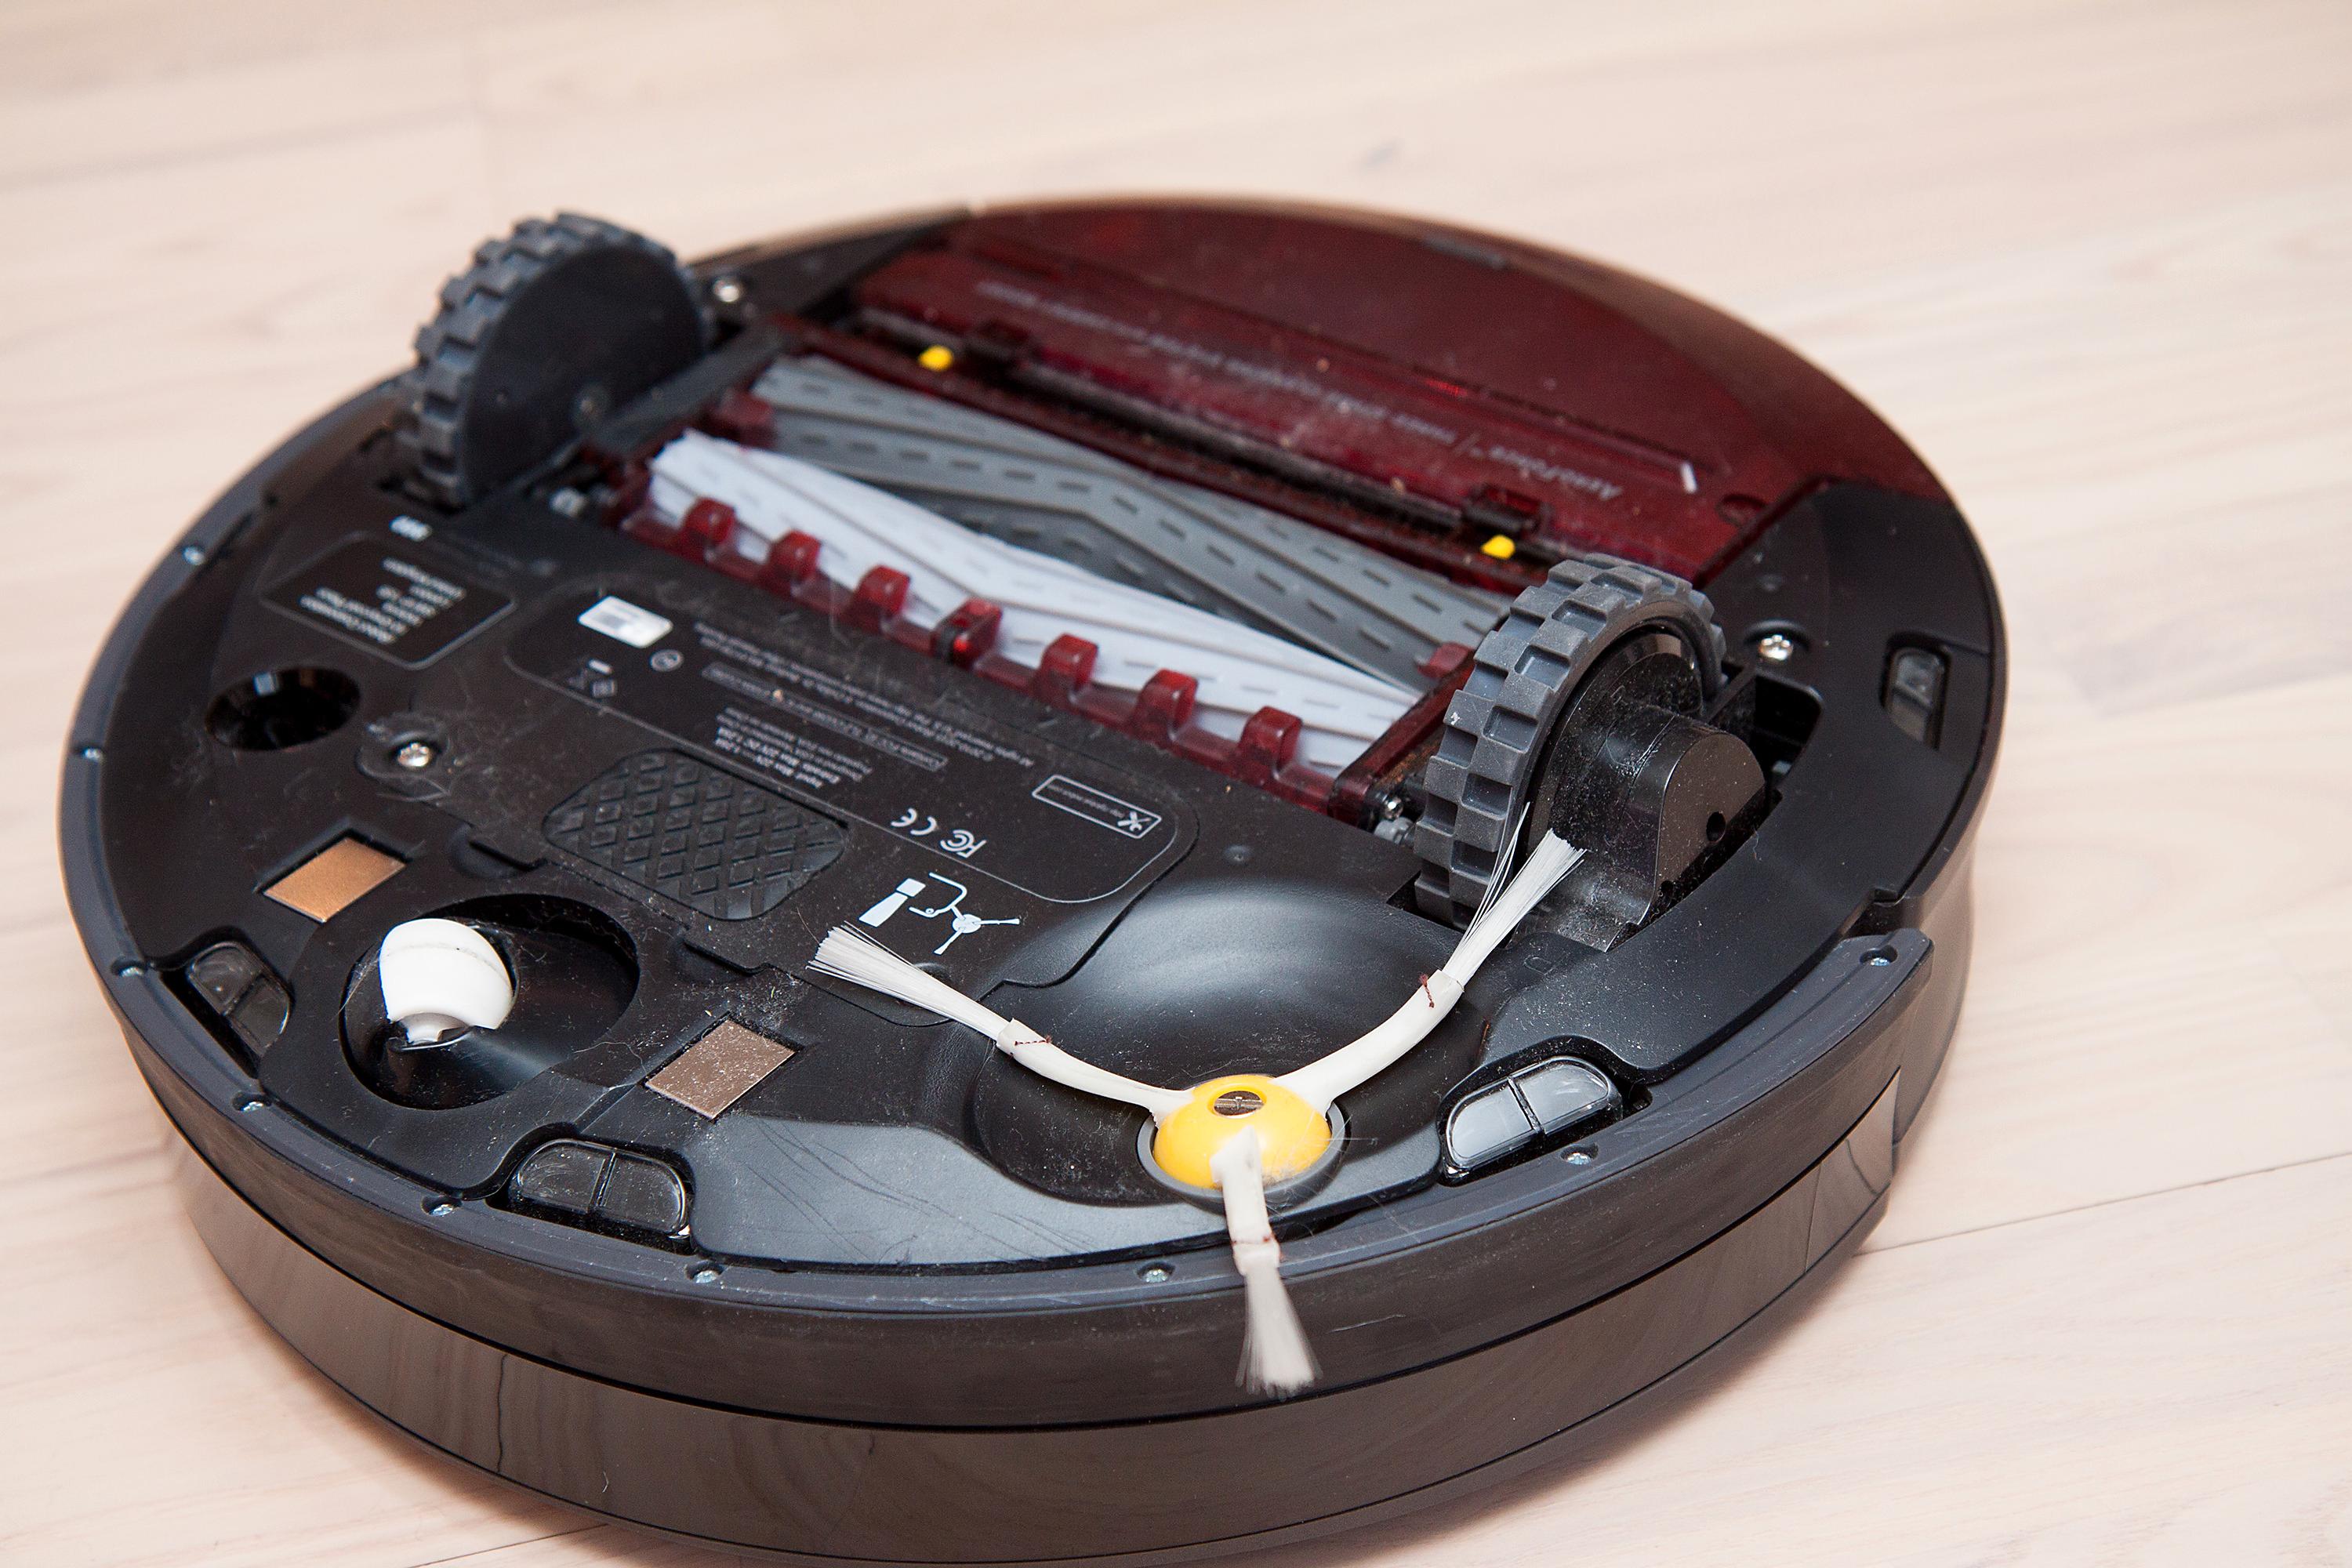 Slik ser iRobot Roomba 980 ut på undersiden.